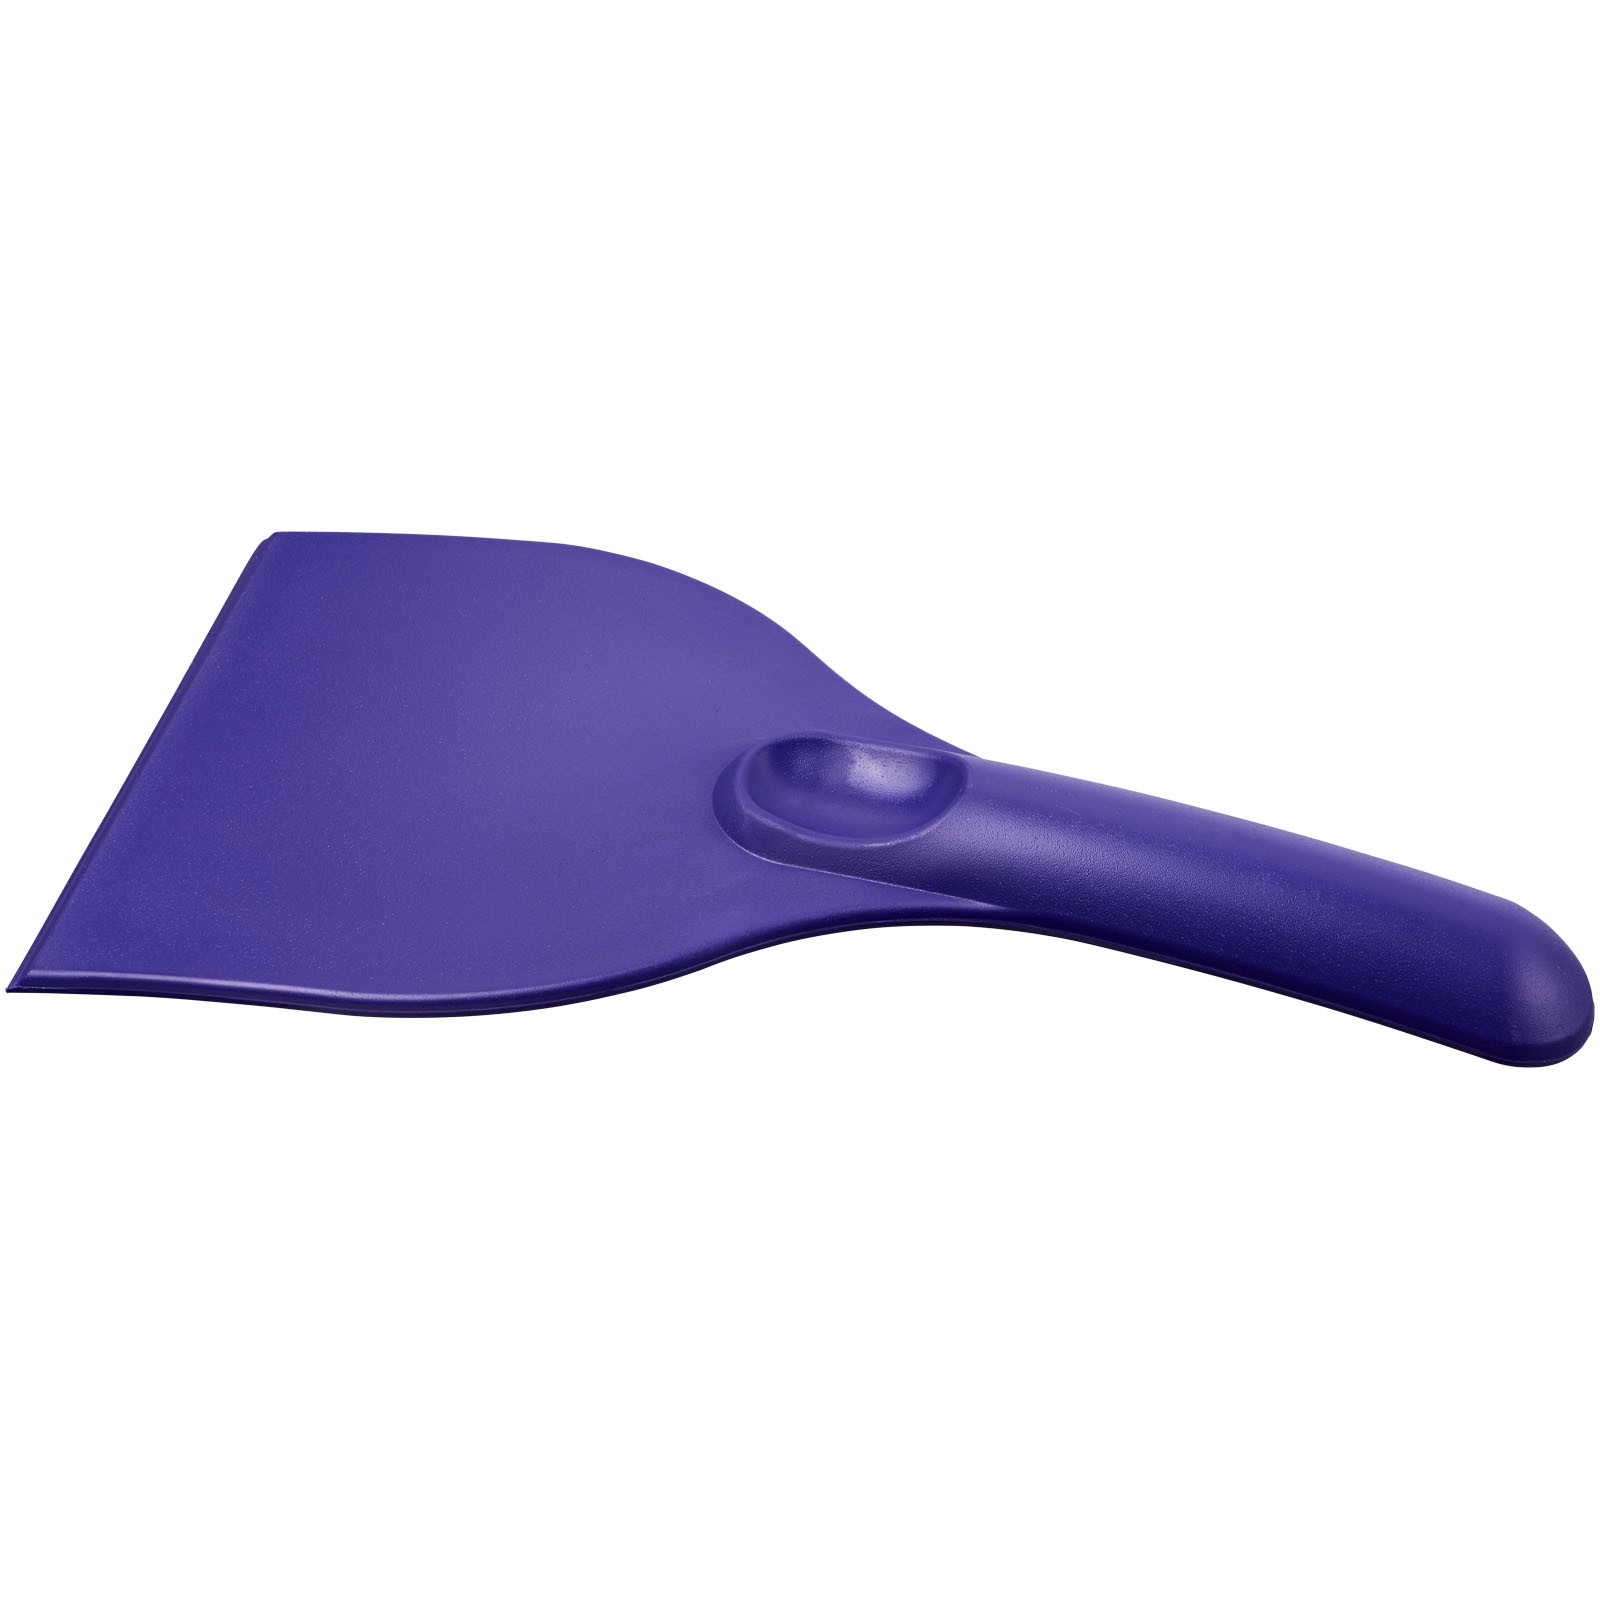 Artur curved plastic ice scraper - Purple